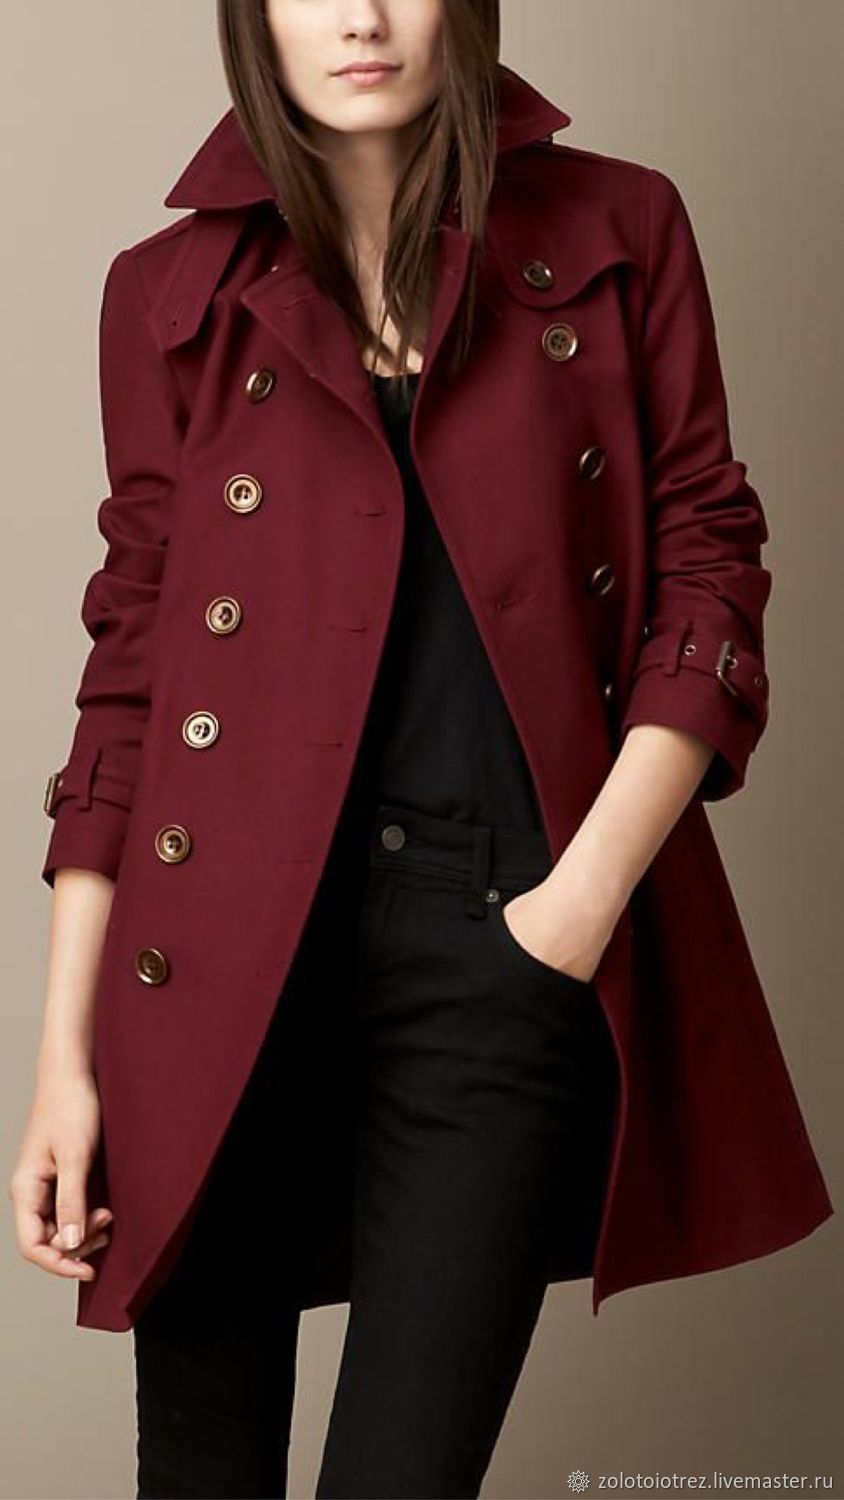 С чем носить пальто бордового цвета?